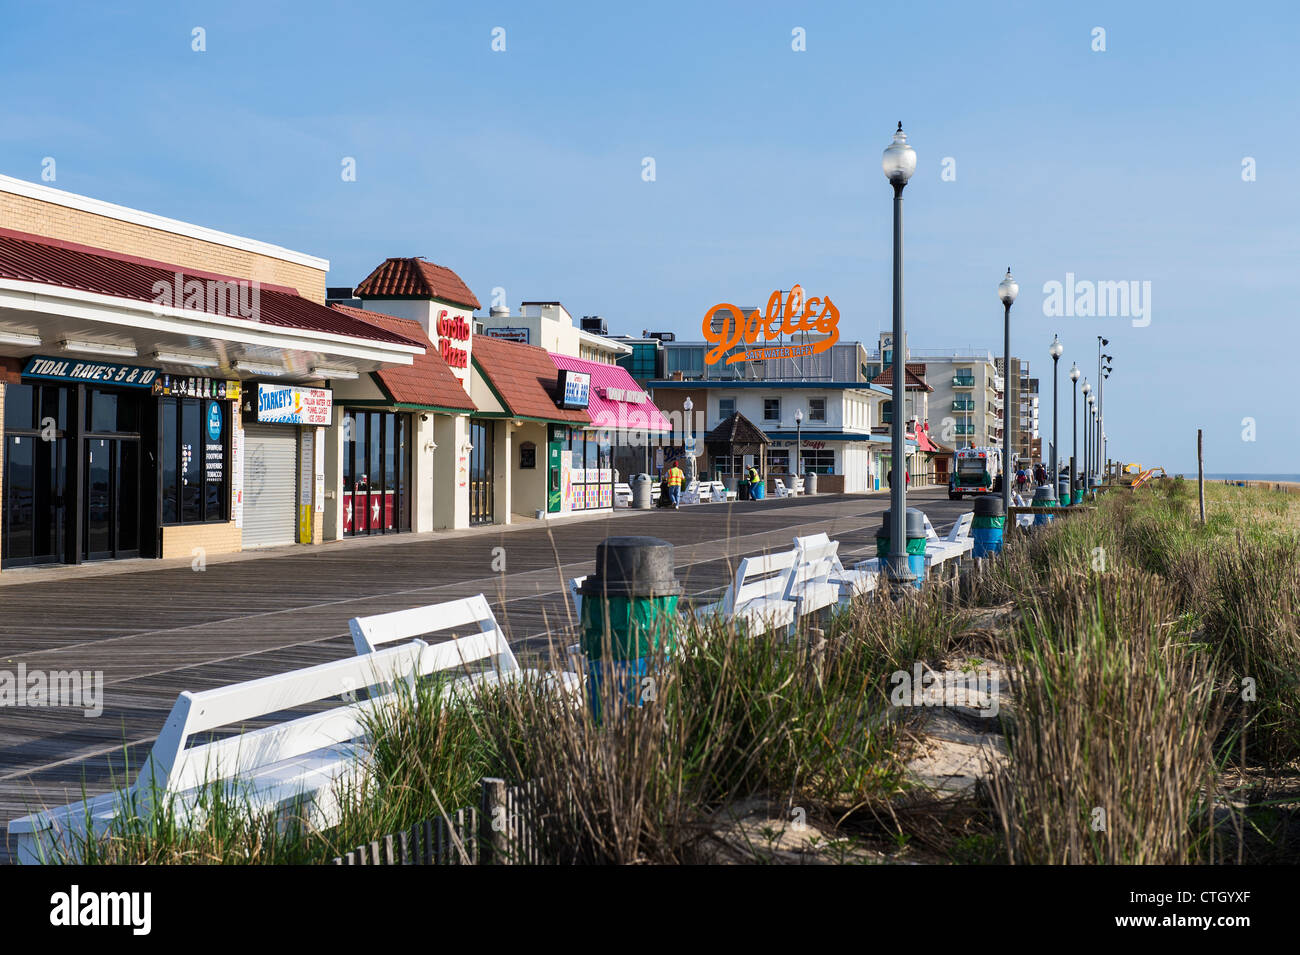 Bethany beach boardwalk, Delaware, Usa Stock Photo